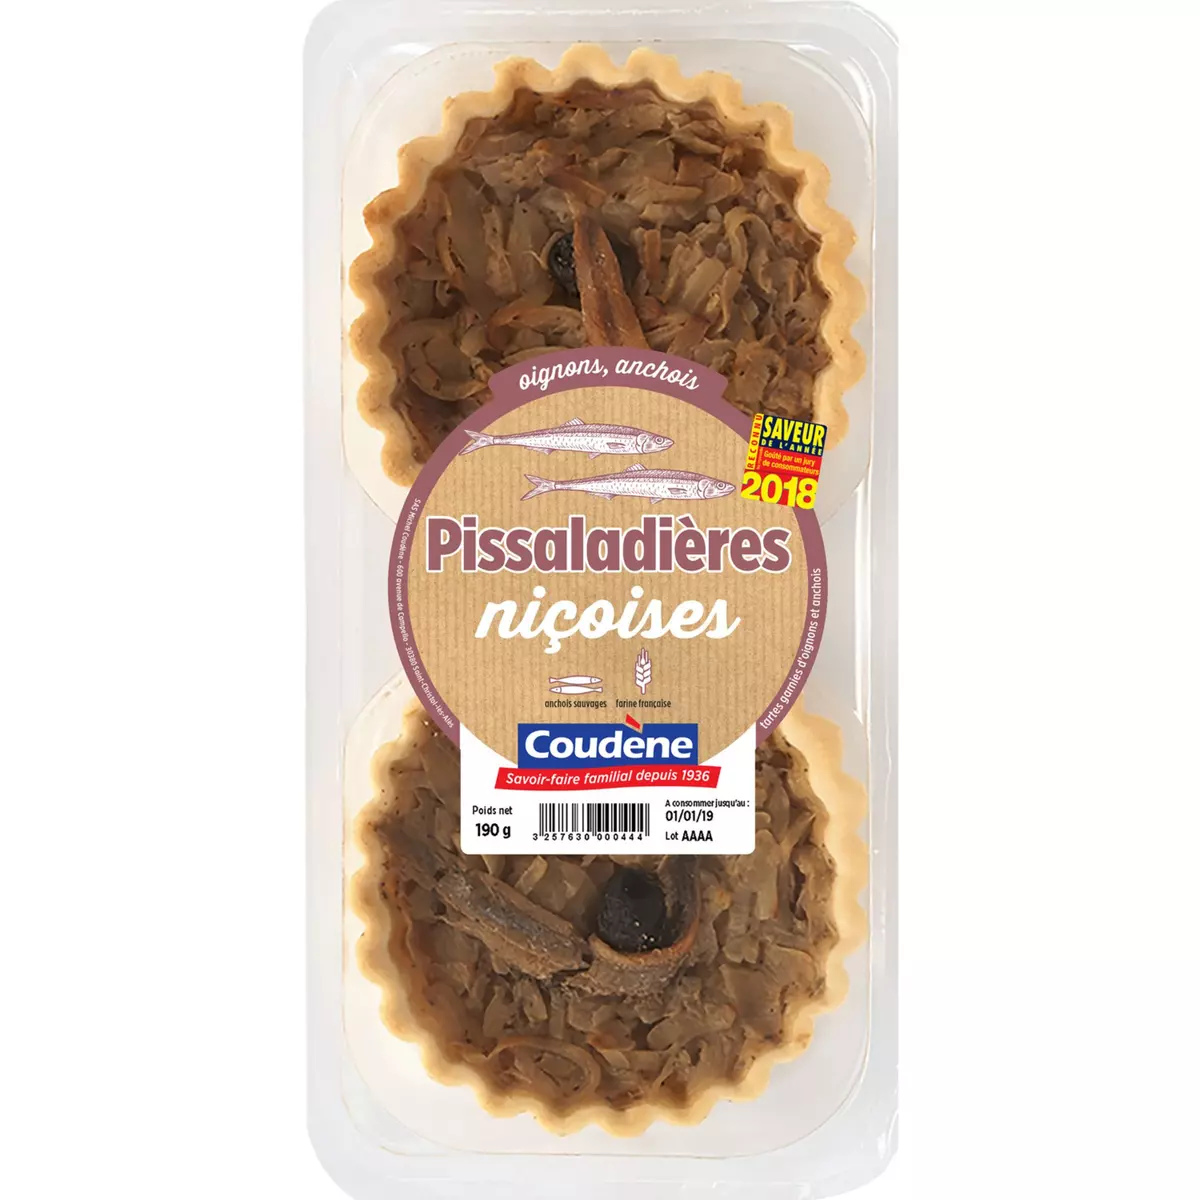 COUDENE Pissaladières niçoises oignons et anchois 2 pièces 190g